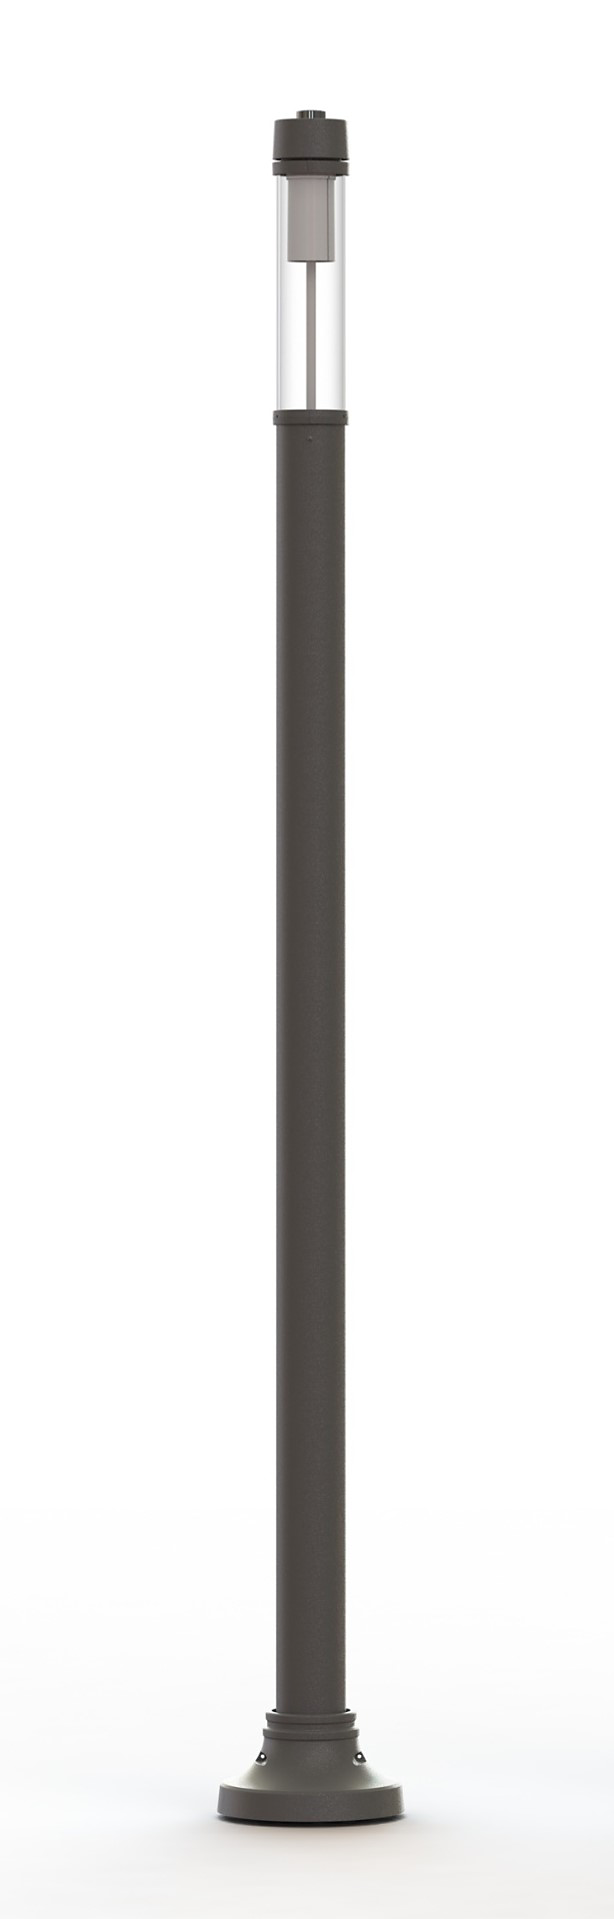 SleekVision Light Column LED (VCC06)